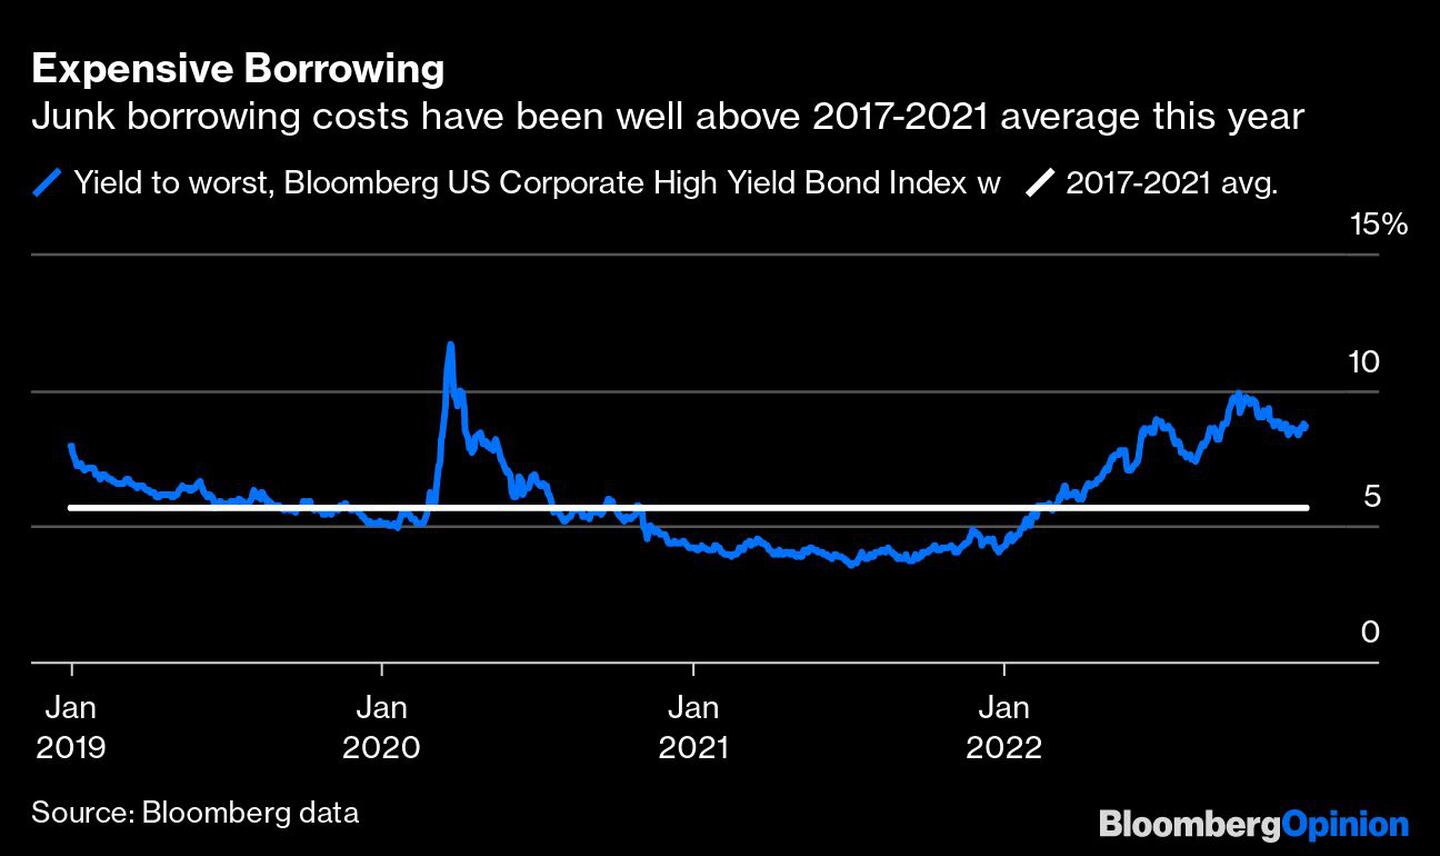 El endeudamiento de los bonos basura han estado muy por encima del promedio de 2017 a 2021dfd